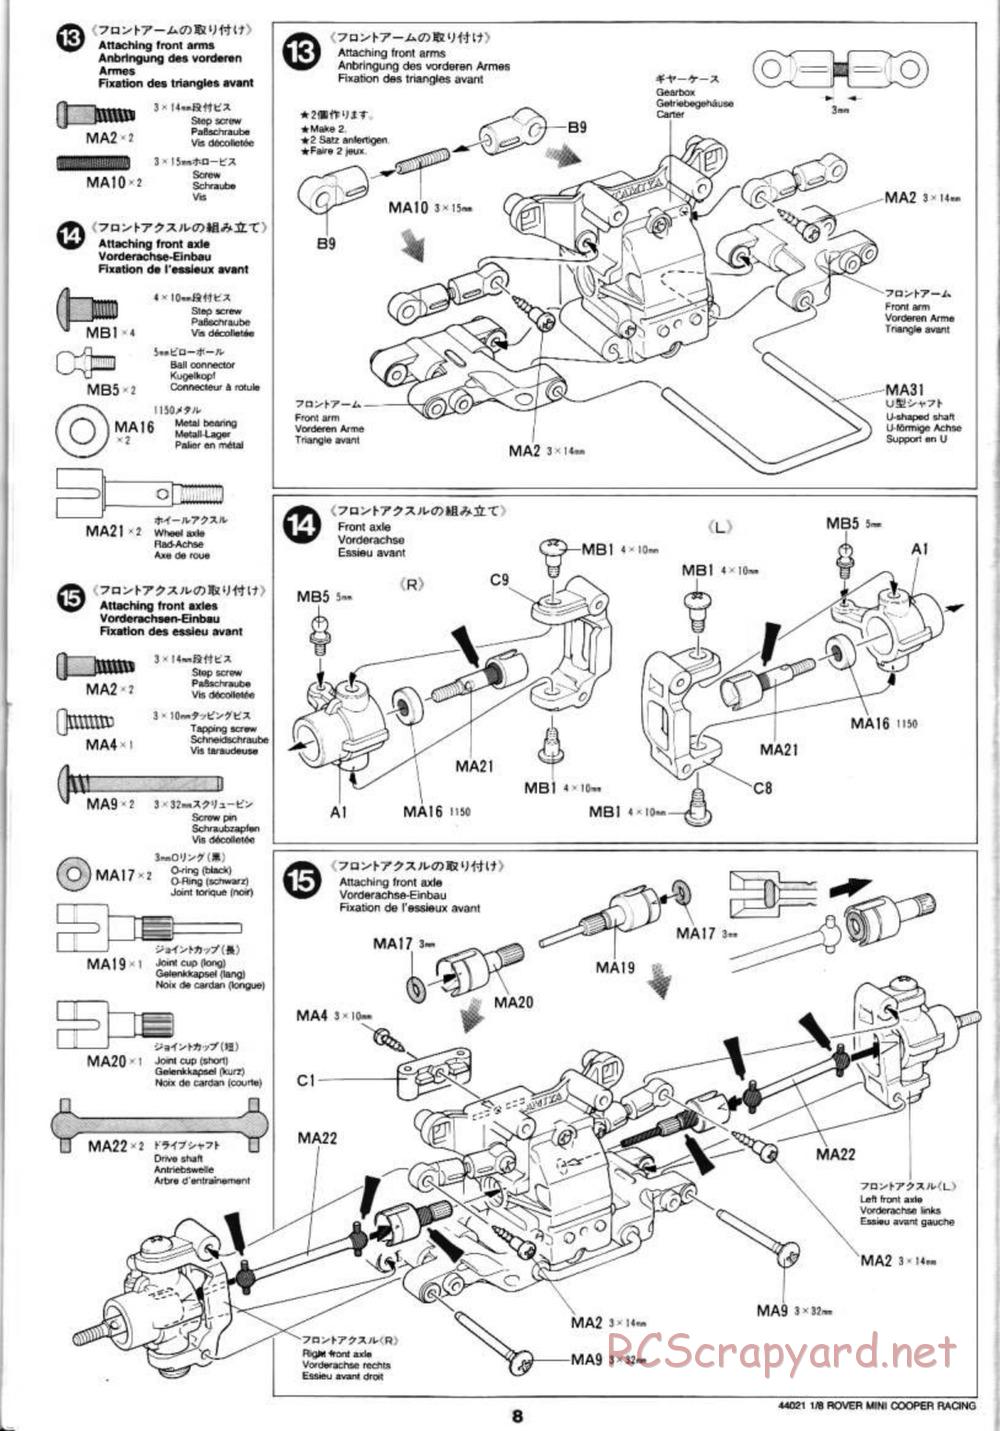 Tamiya - Rover Mini Cooper Racing - TG10 Mk.1 Chassis - Manual - Page 8